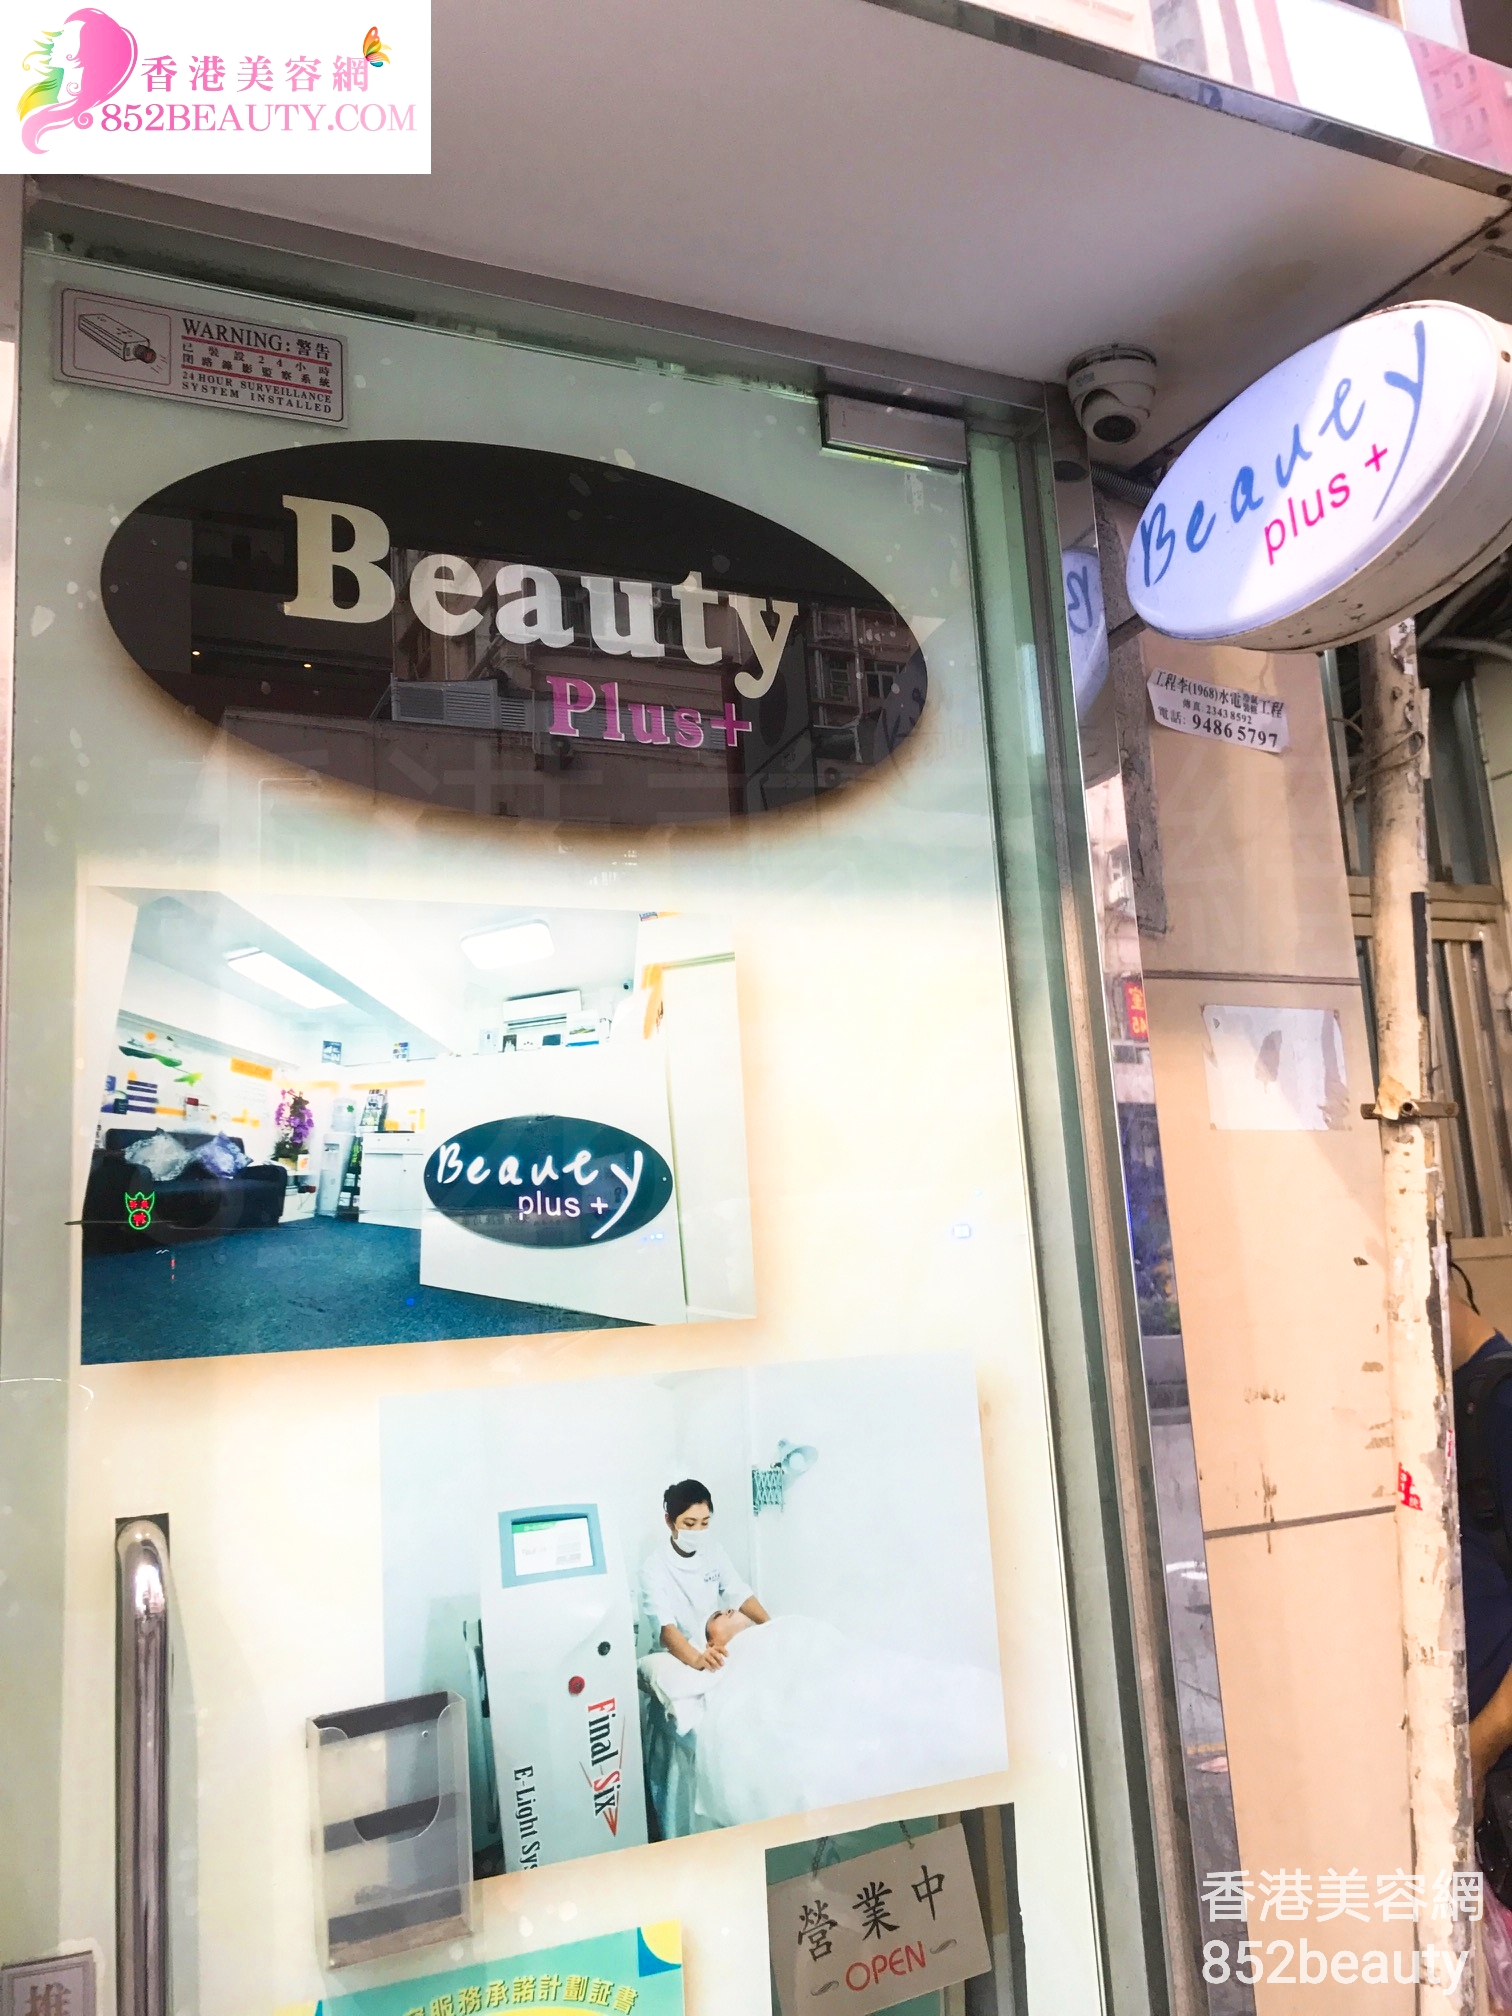 香港美容網 Hong Kong Beauty Salon 美容院 / 美容師: Beauty plus+